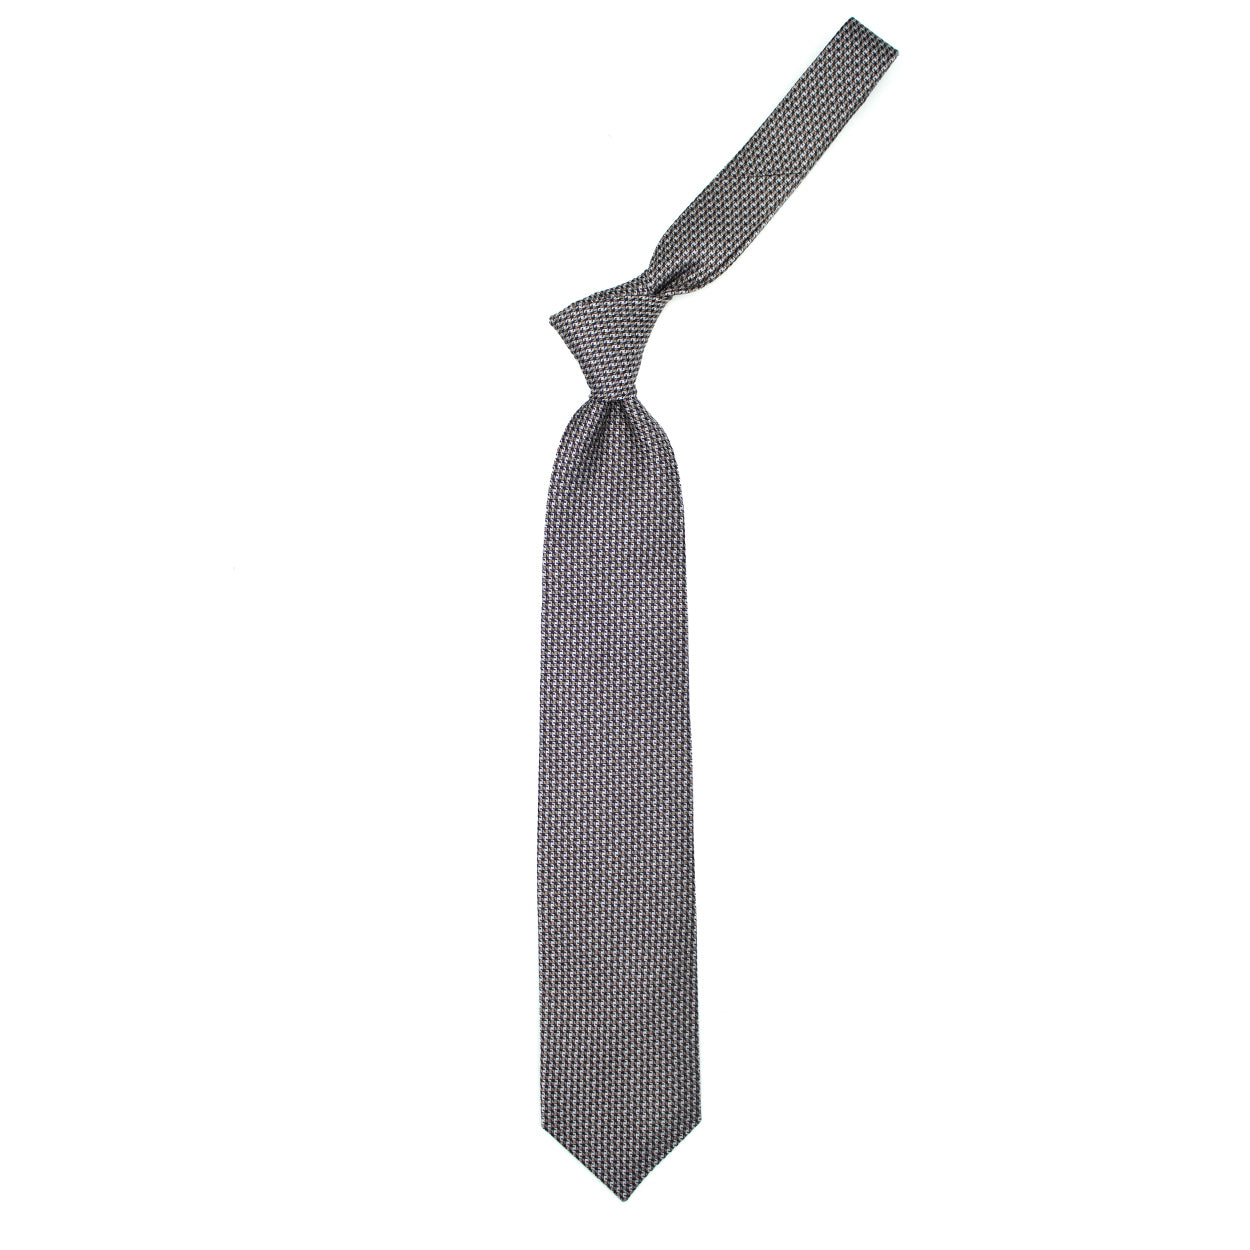 Beige, white and black textured tie